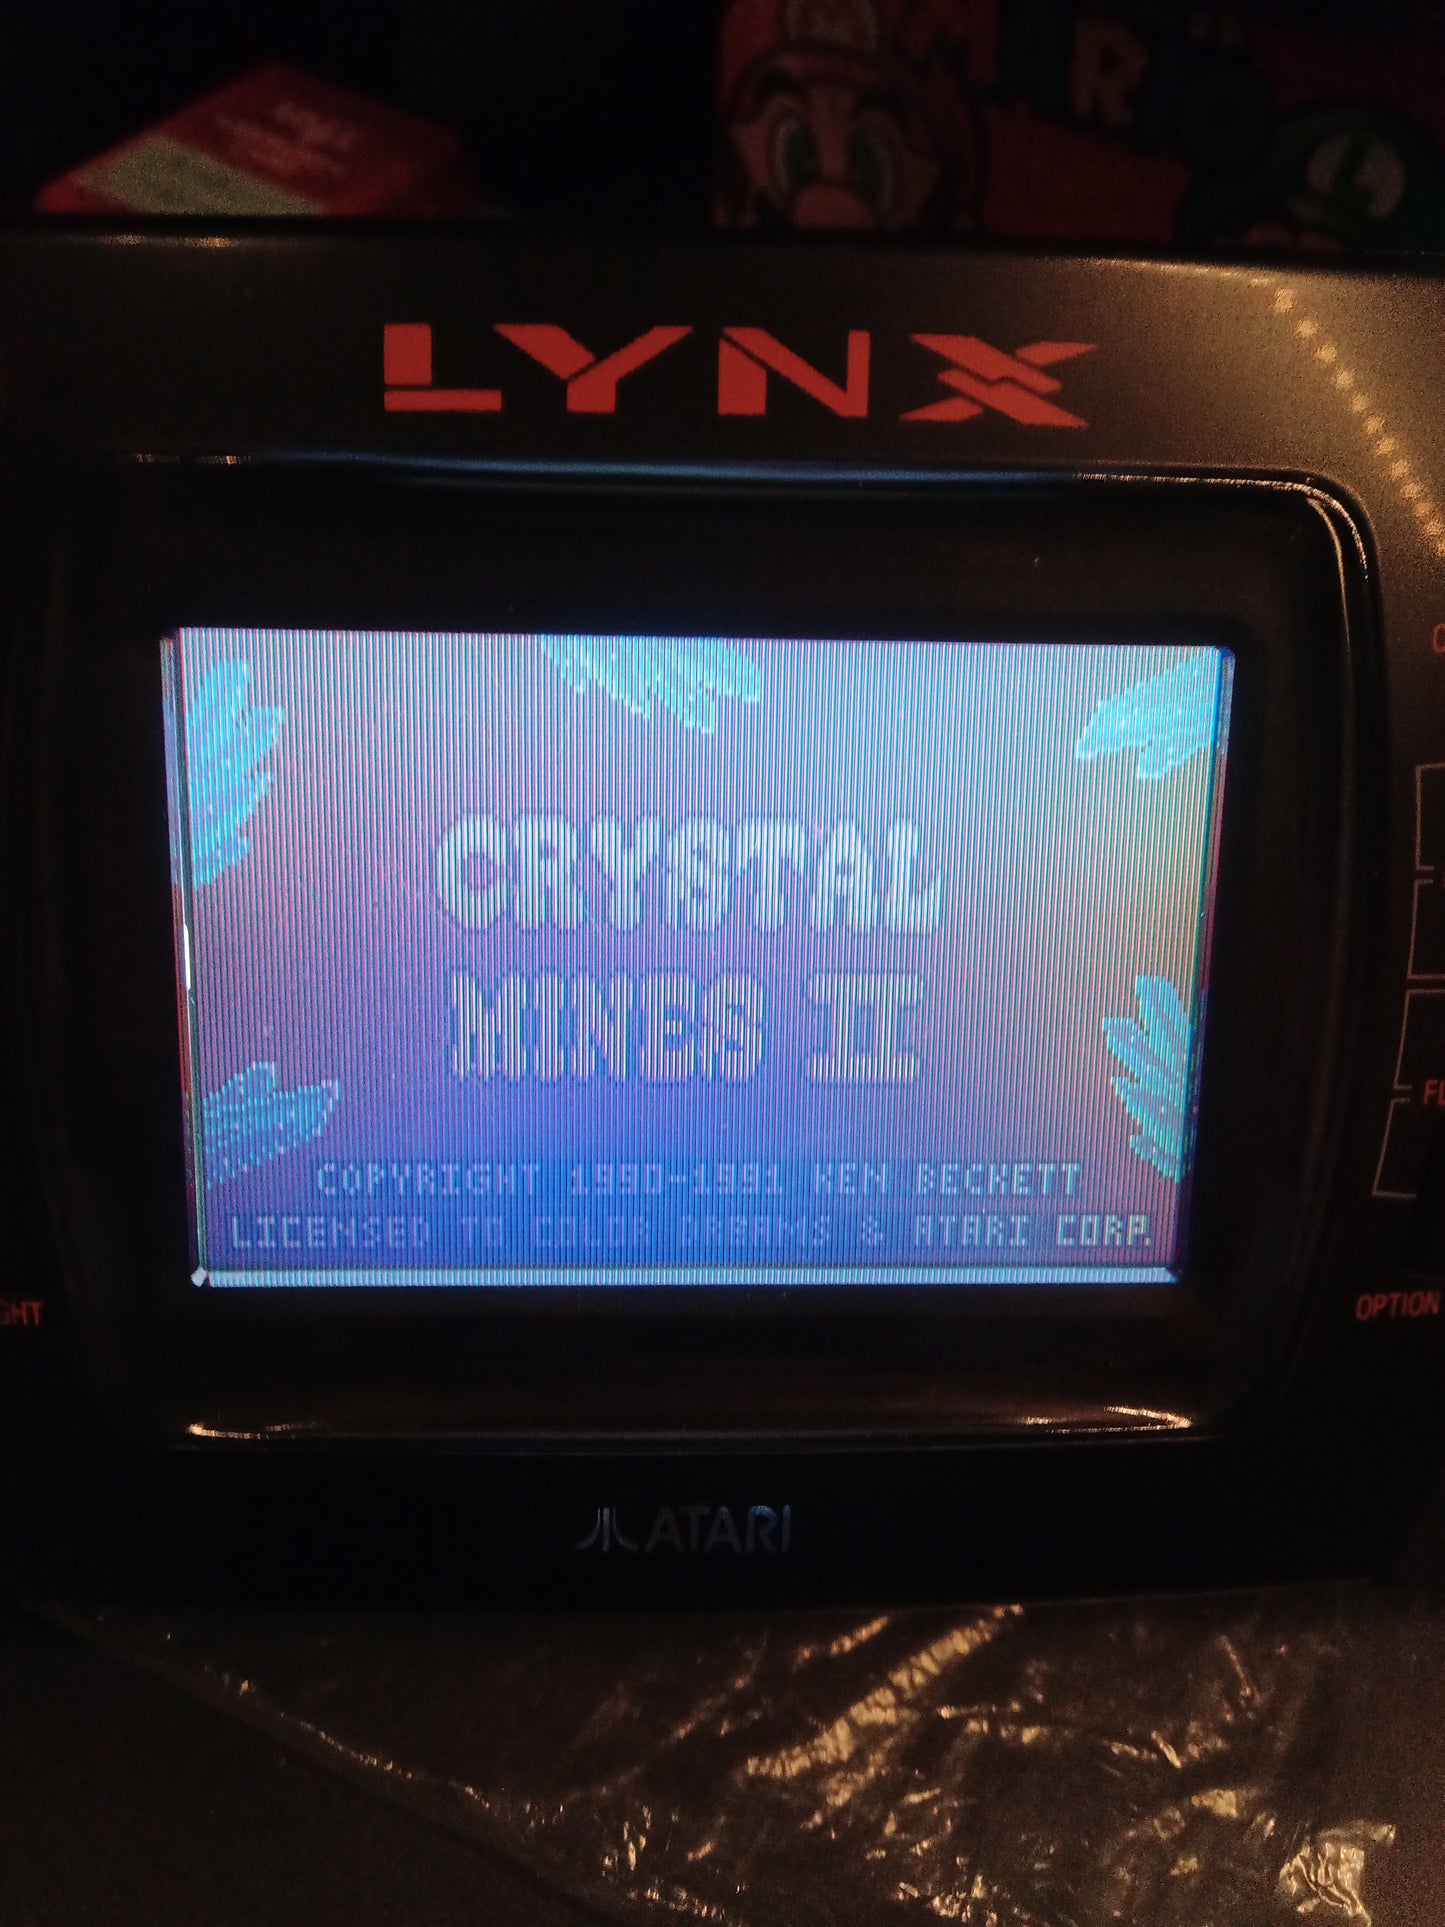 Crystal Mines II